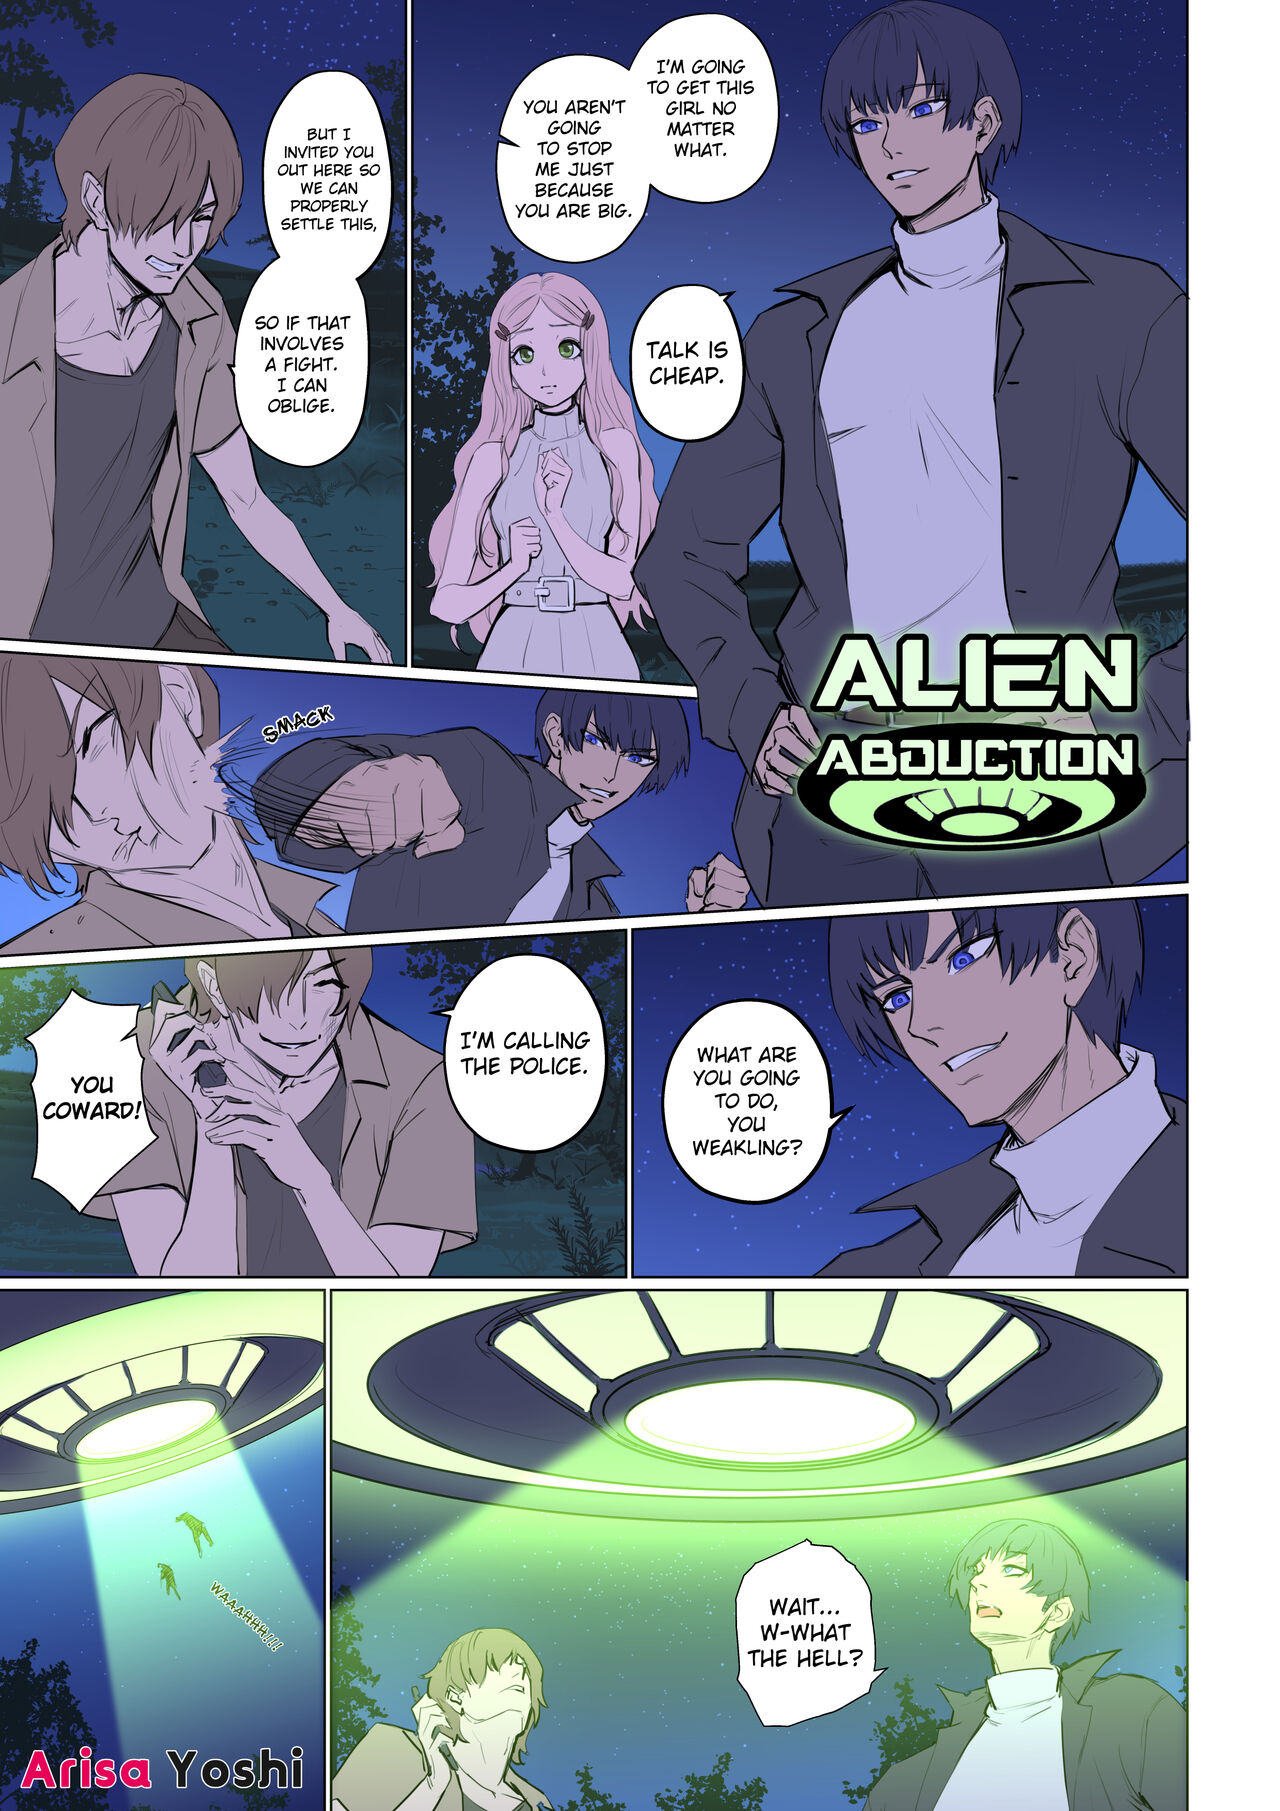 Female Alien Abduction Porn Comic - Alien Abduction 1 [Arisane / Arisa Yoshi] - Porn Cartoon Comics